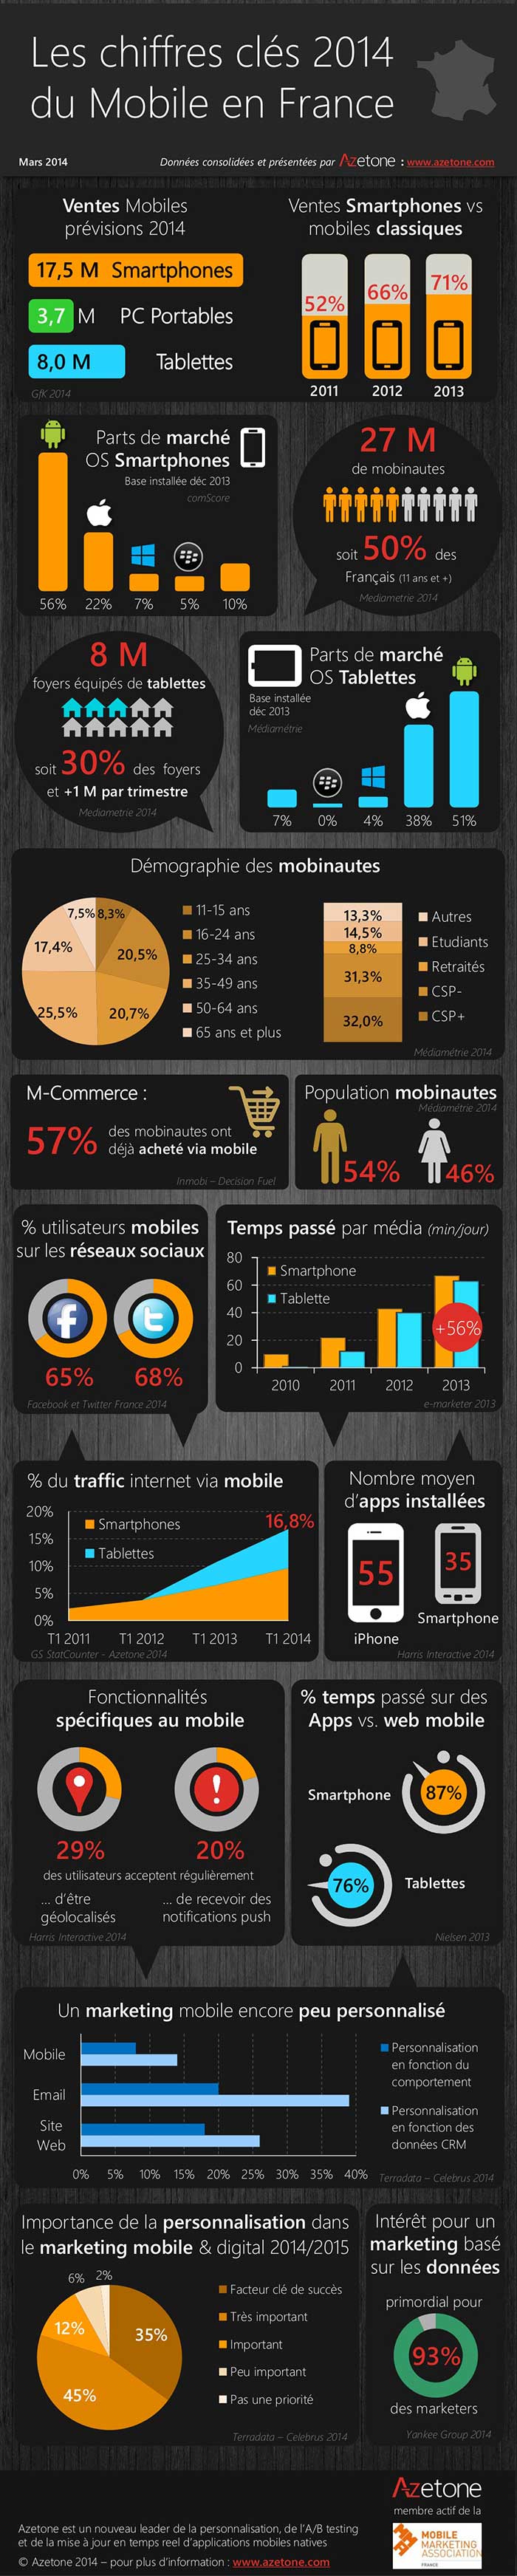 les chiffres clés du marketing mobile en France en 2014, réalisée par Azetone